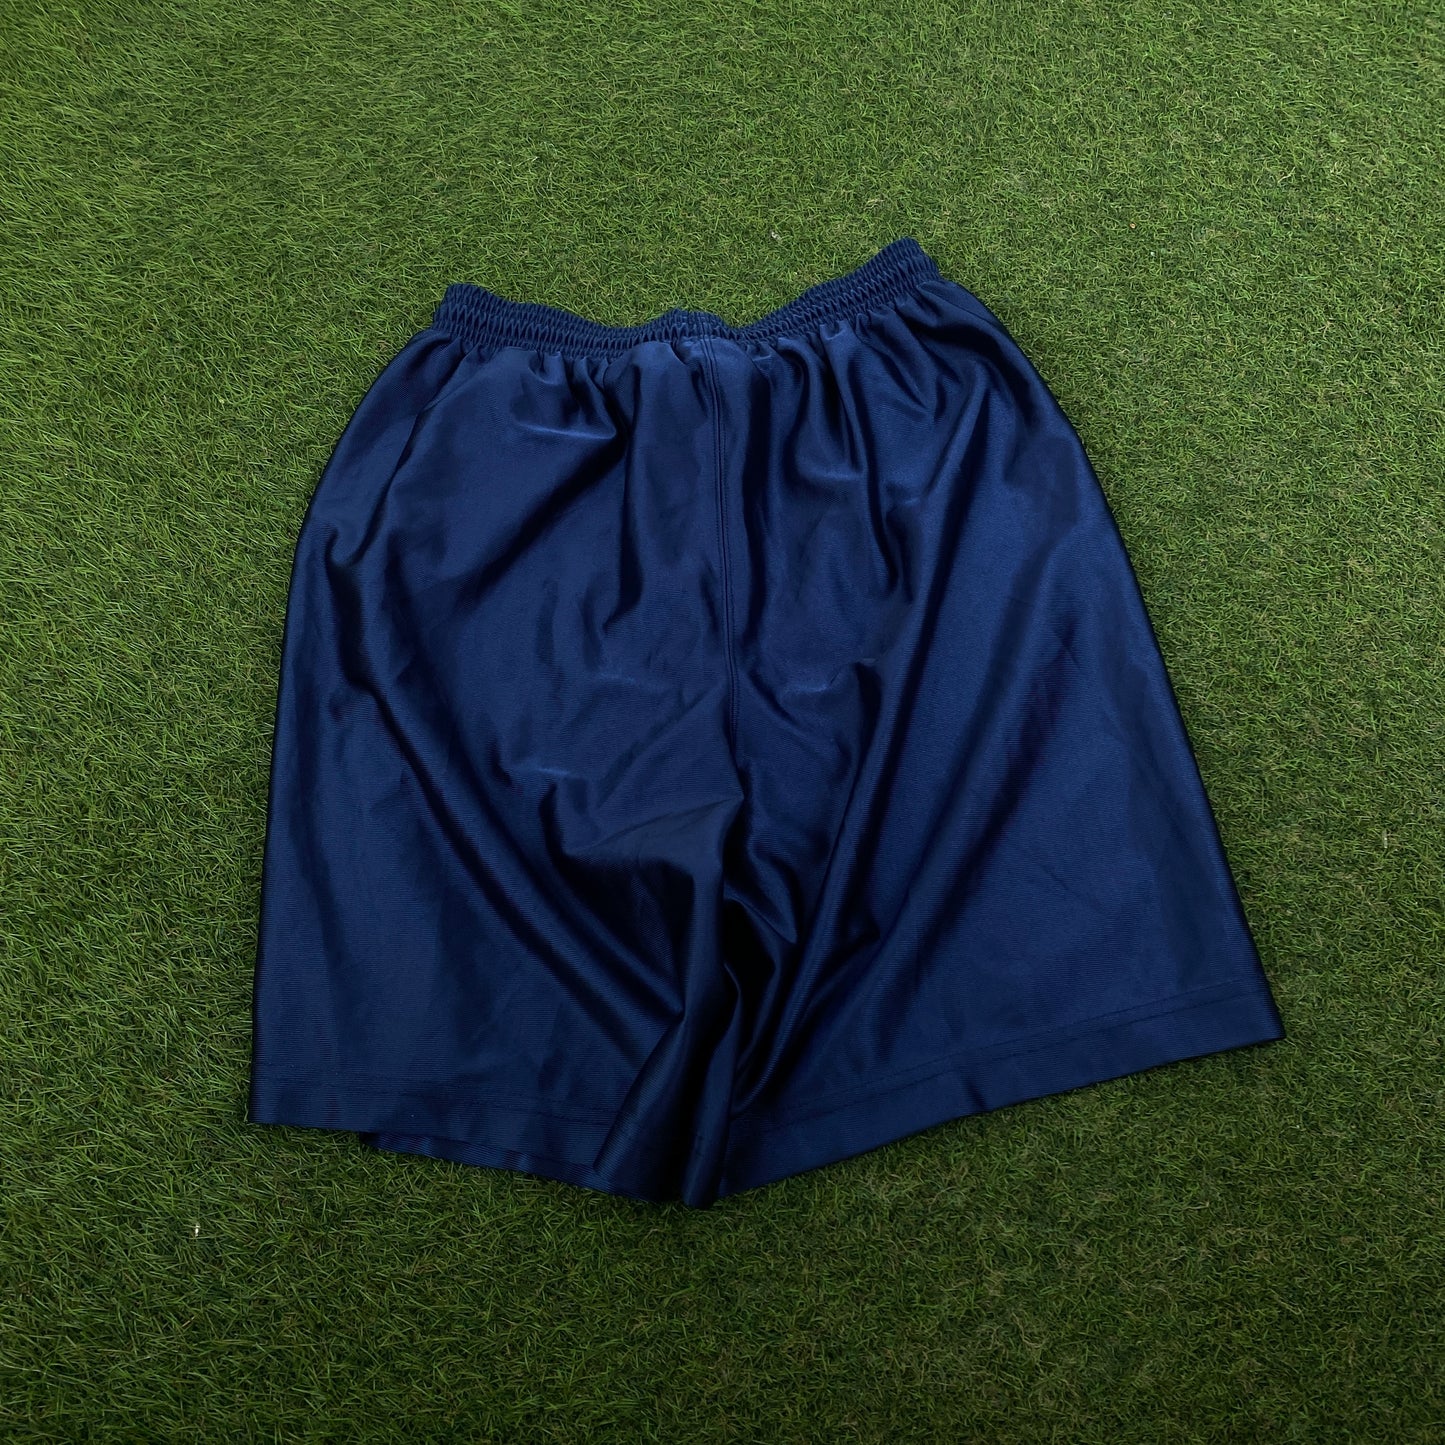 90s Nike Football Shorts Blue Large